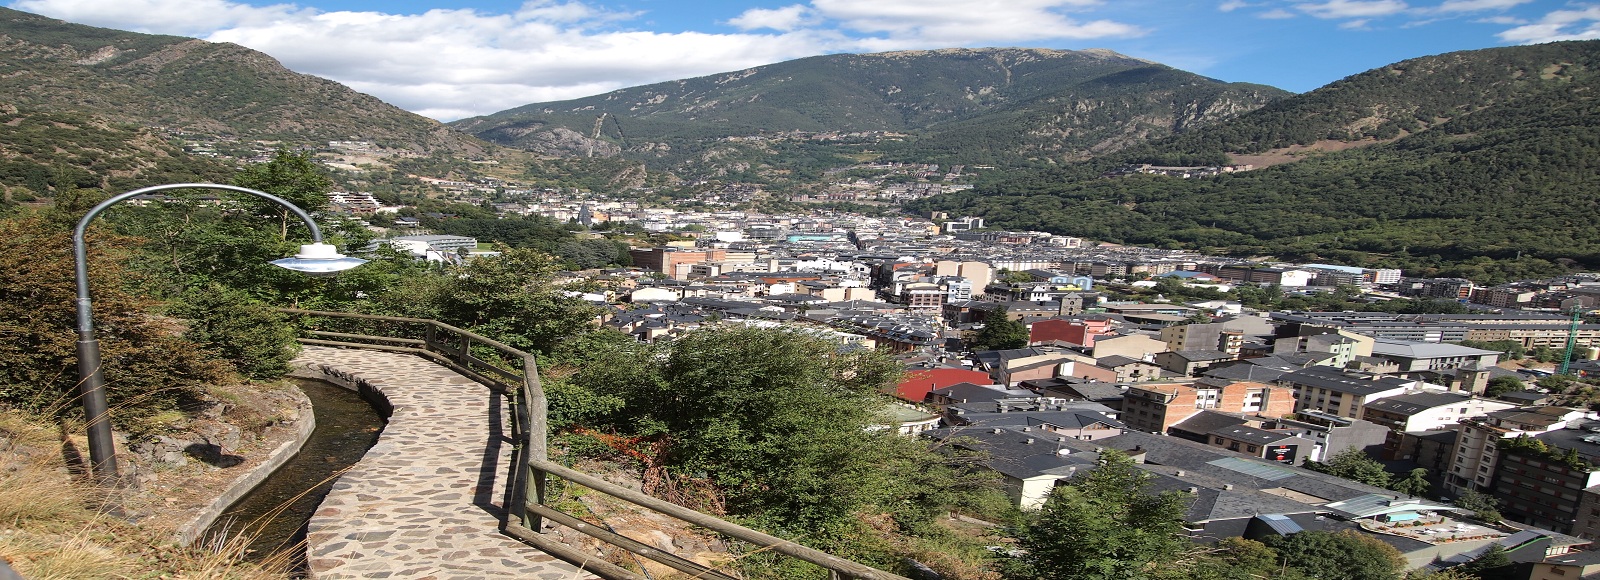 Ofertas de Traslados en Andorra. Traslados económicos en Andorra 